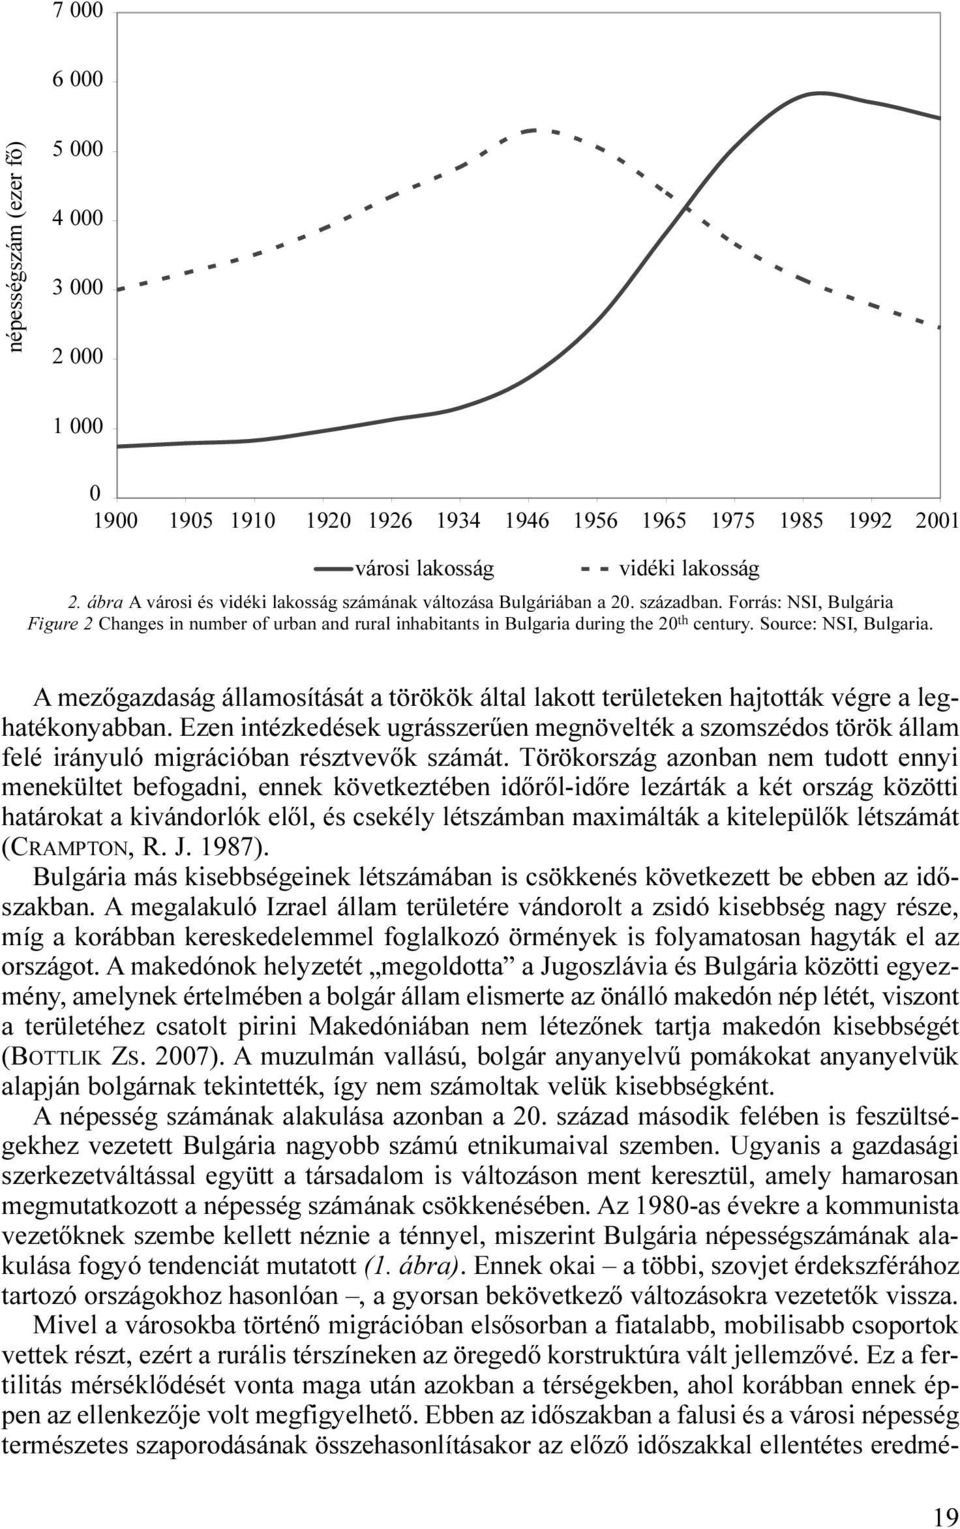 Source: NSI, Bulgaria. A mezőgazdaság államosítását a törökök által lakott területeken hajtották végre a leghatékonyabban.